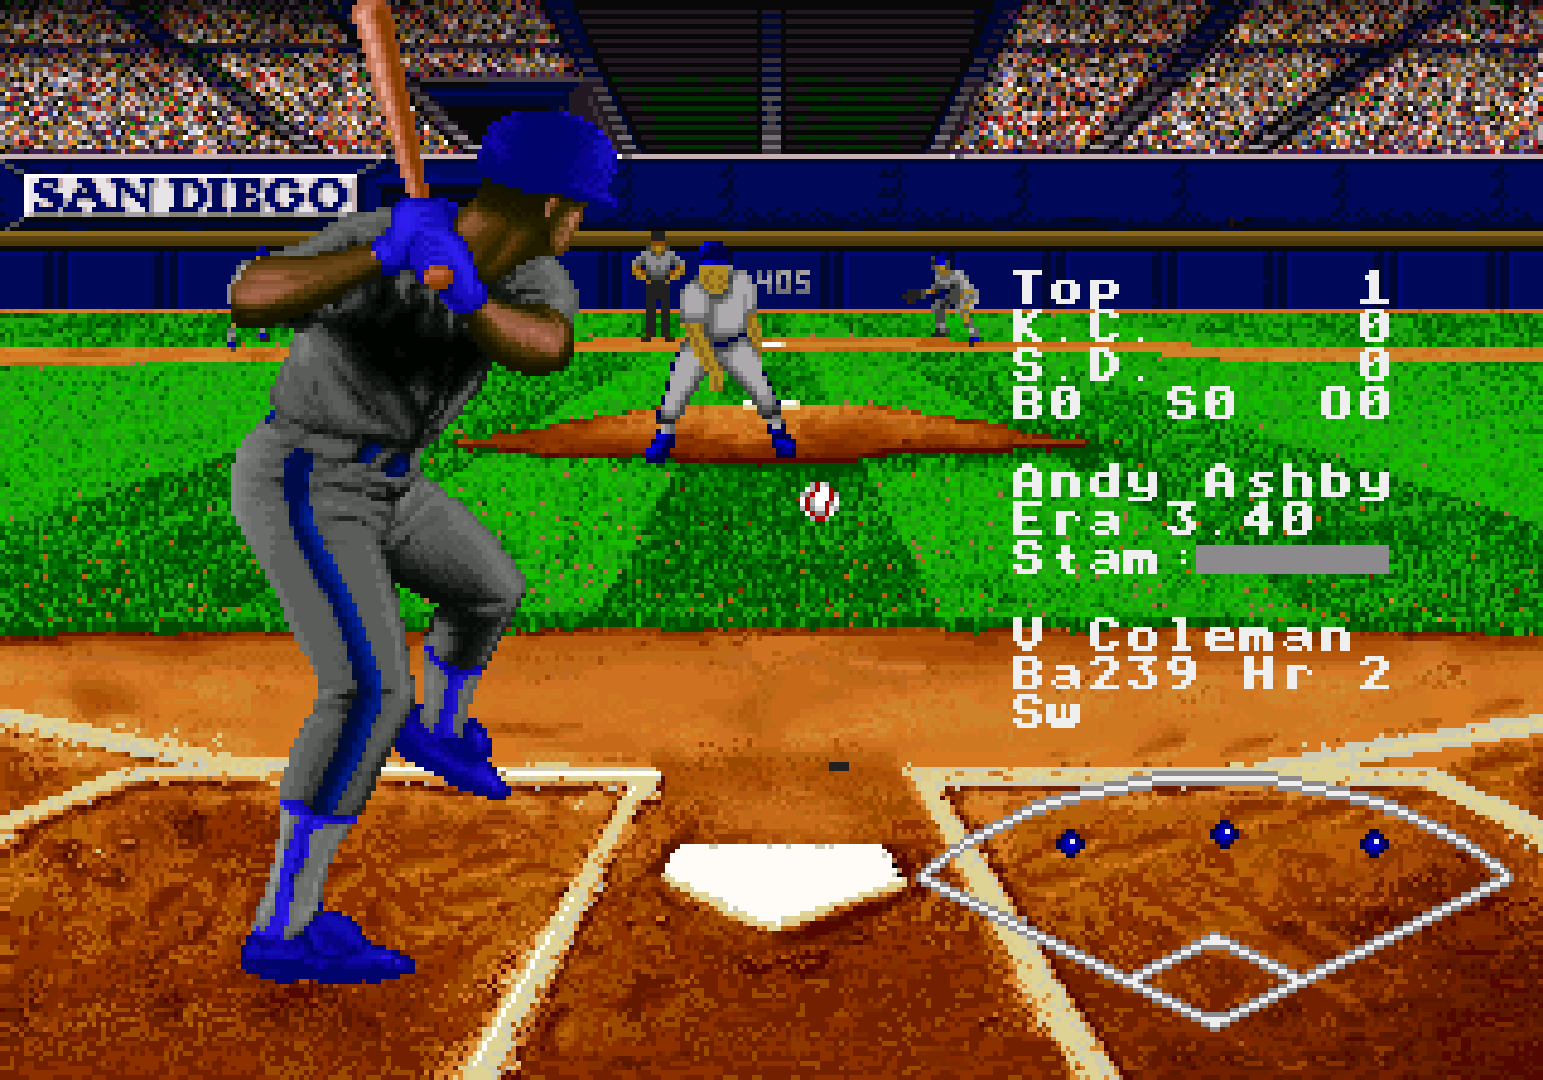 RBI Baseball '95